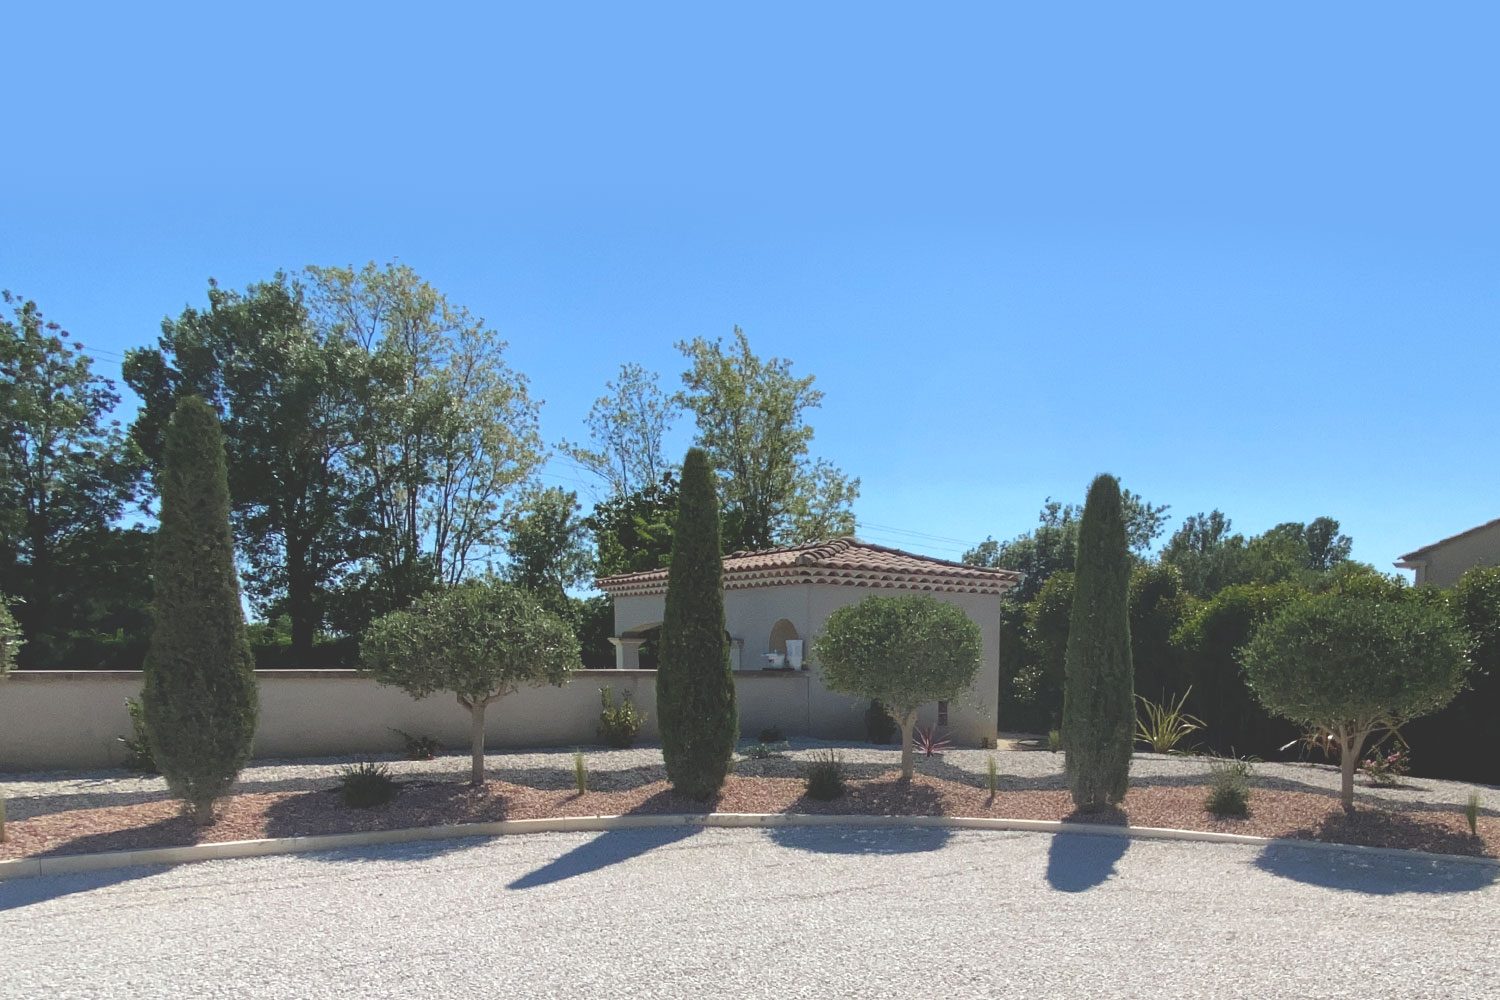 Jardinier, paysagiste et terrassier à Saint Rémy de Provence. Le paysagiste conçoit un espace qui vous ressemble et qui s’embellira avec les années. Riche d’une équipe complète, Conti Jardins a une vision globale de votre espace dès la conception.